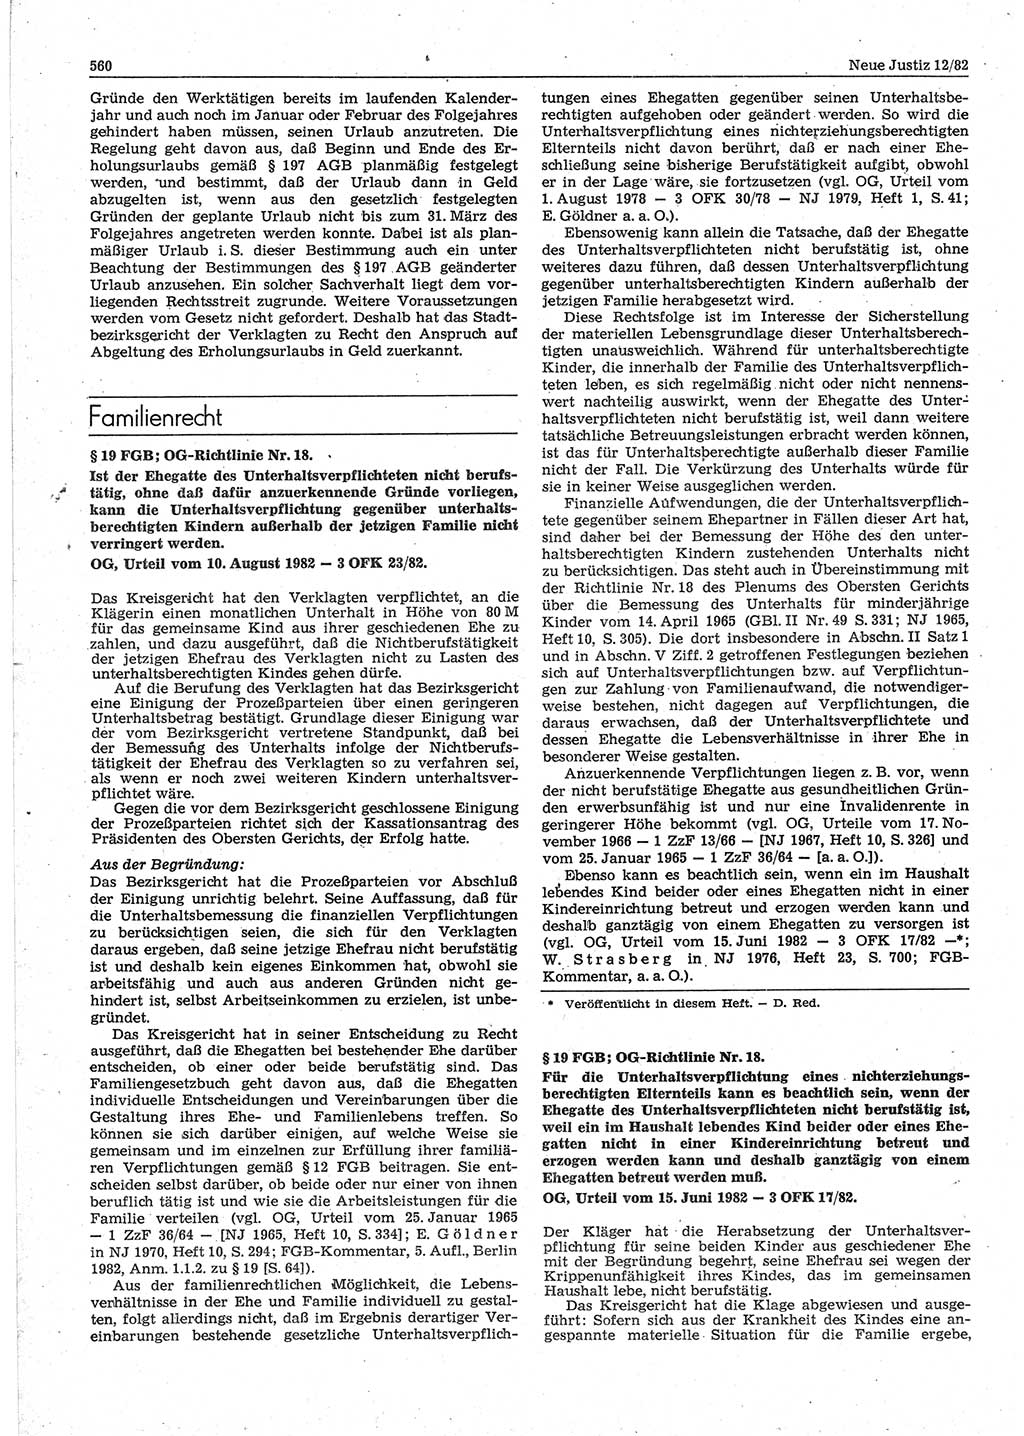 Neue Justiz (NJ), Zeitschrift für sozialistisches Recht und Gesetzlichkeit [Deutsche Demokratische Republik (DDR)], 36. Jahrgang 1982, Seite 560 (NJ DDR 1982, S. 560)